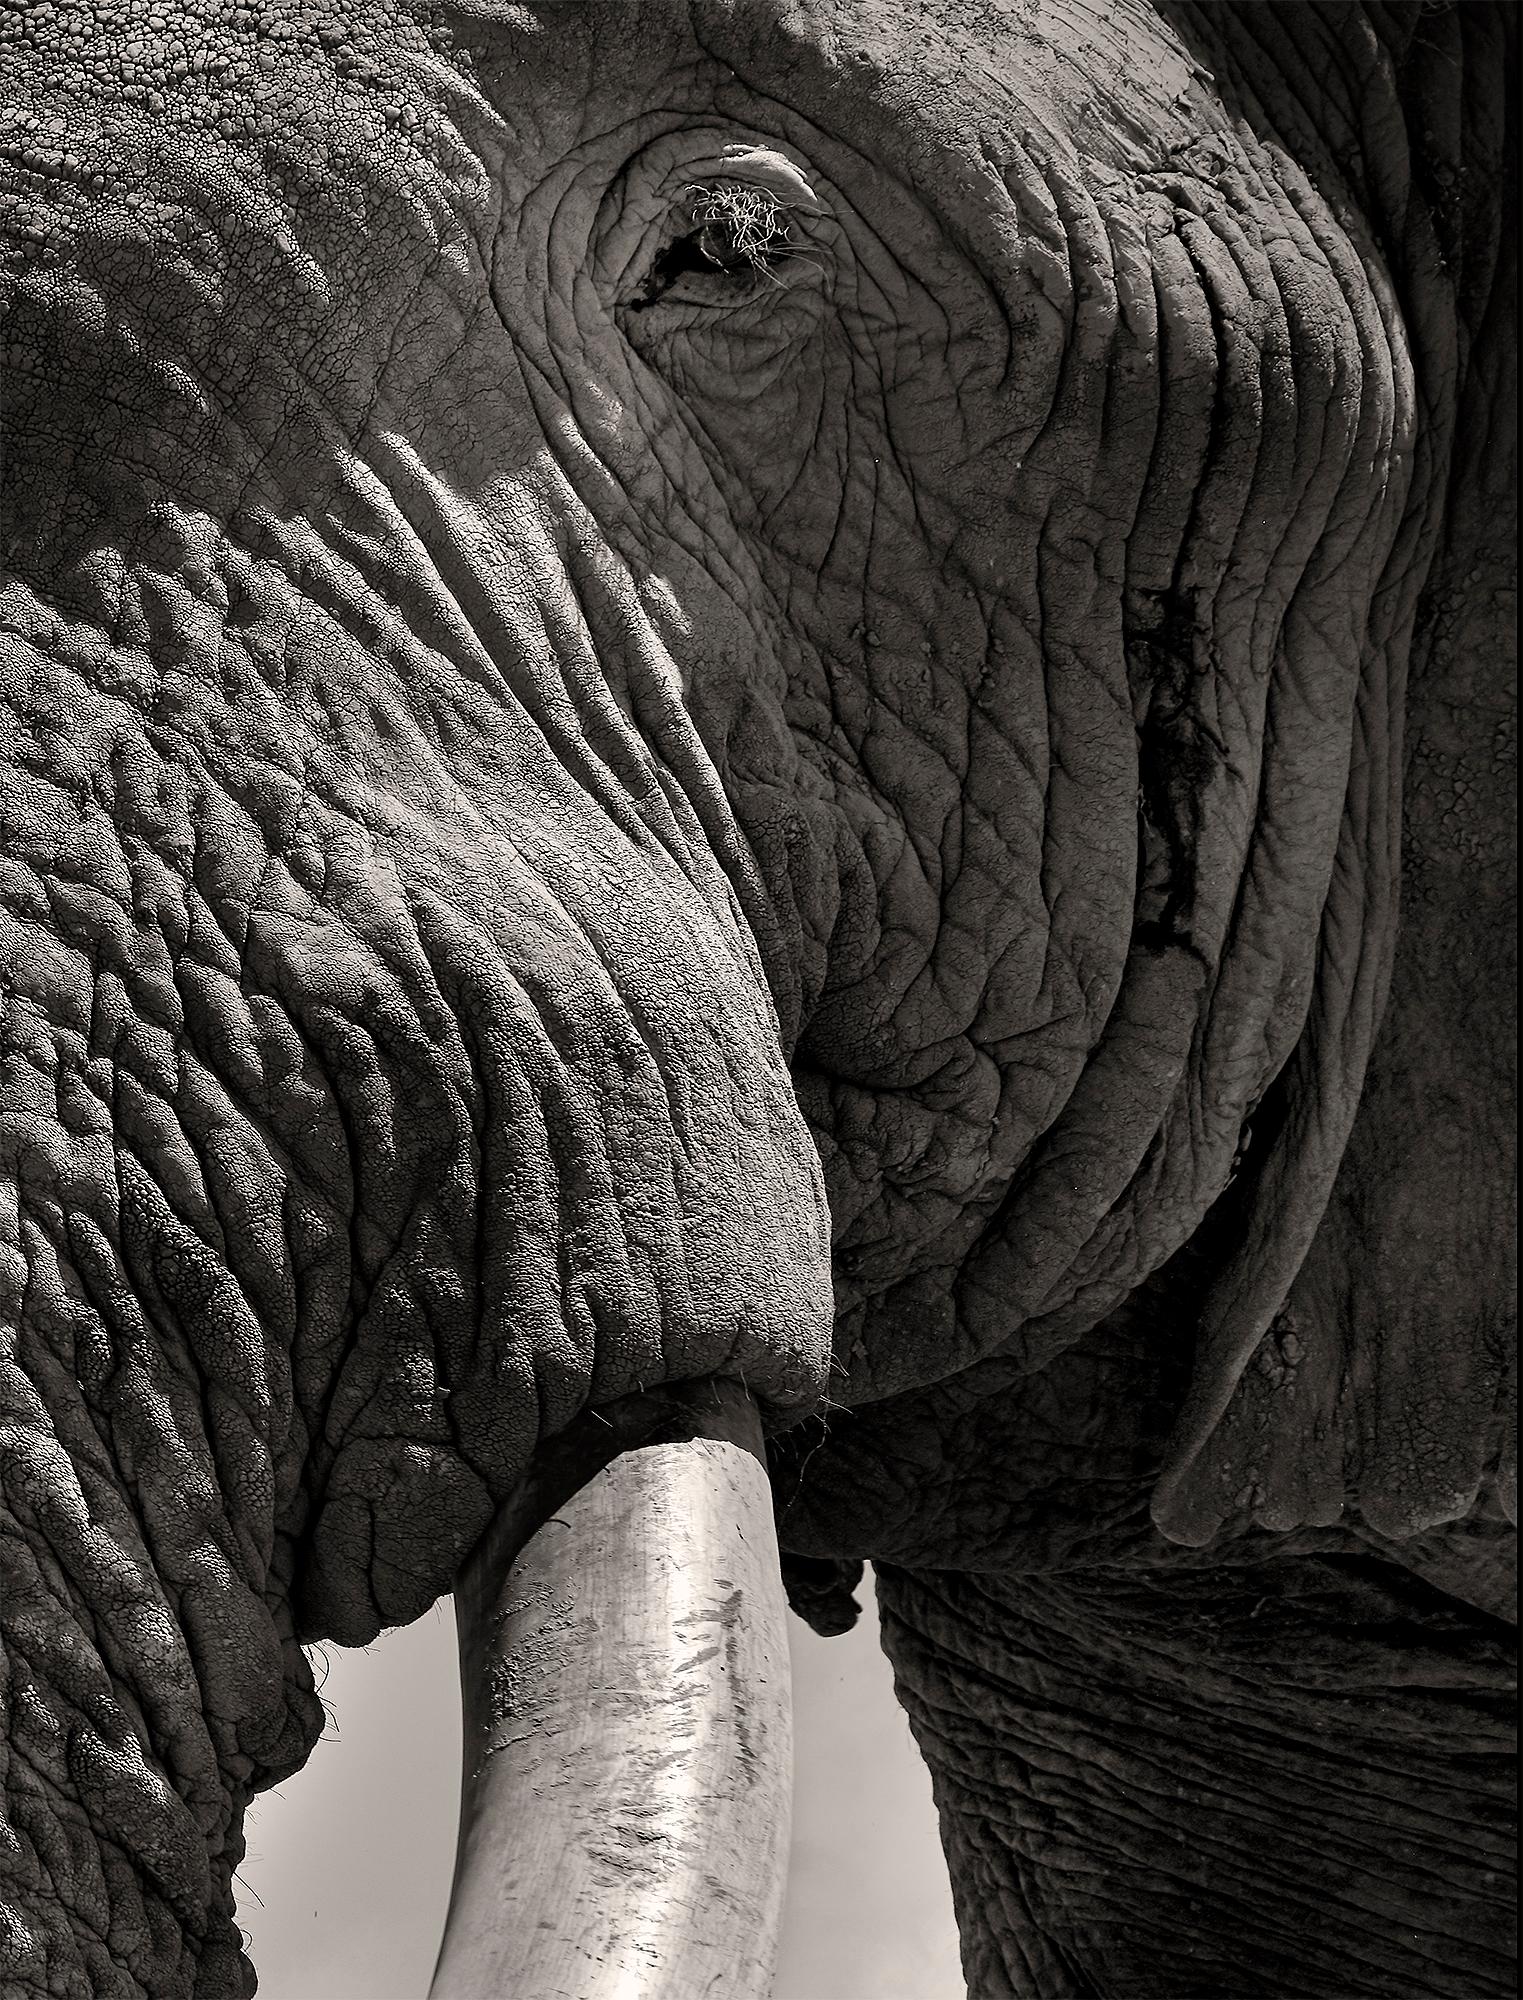 Tim - Eye to Eye, Platinum Palladium, Hall of Giants Series - Black Portrait Photograph by Joachim Schmeisser